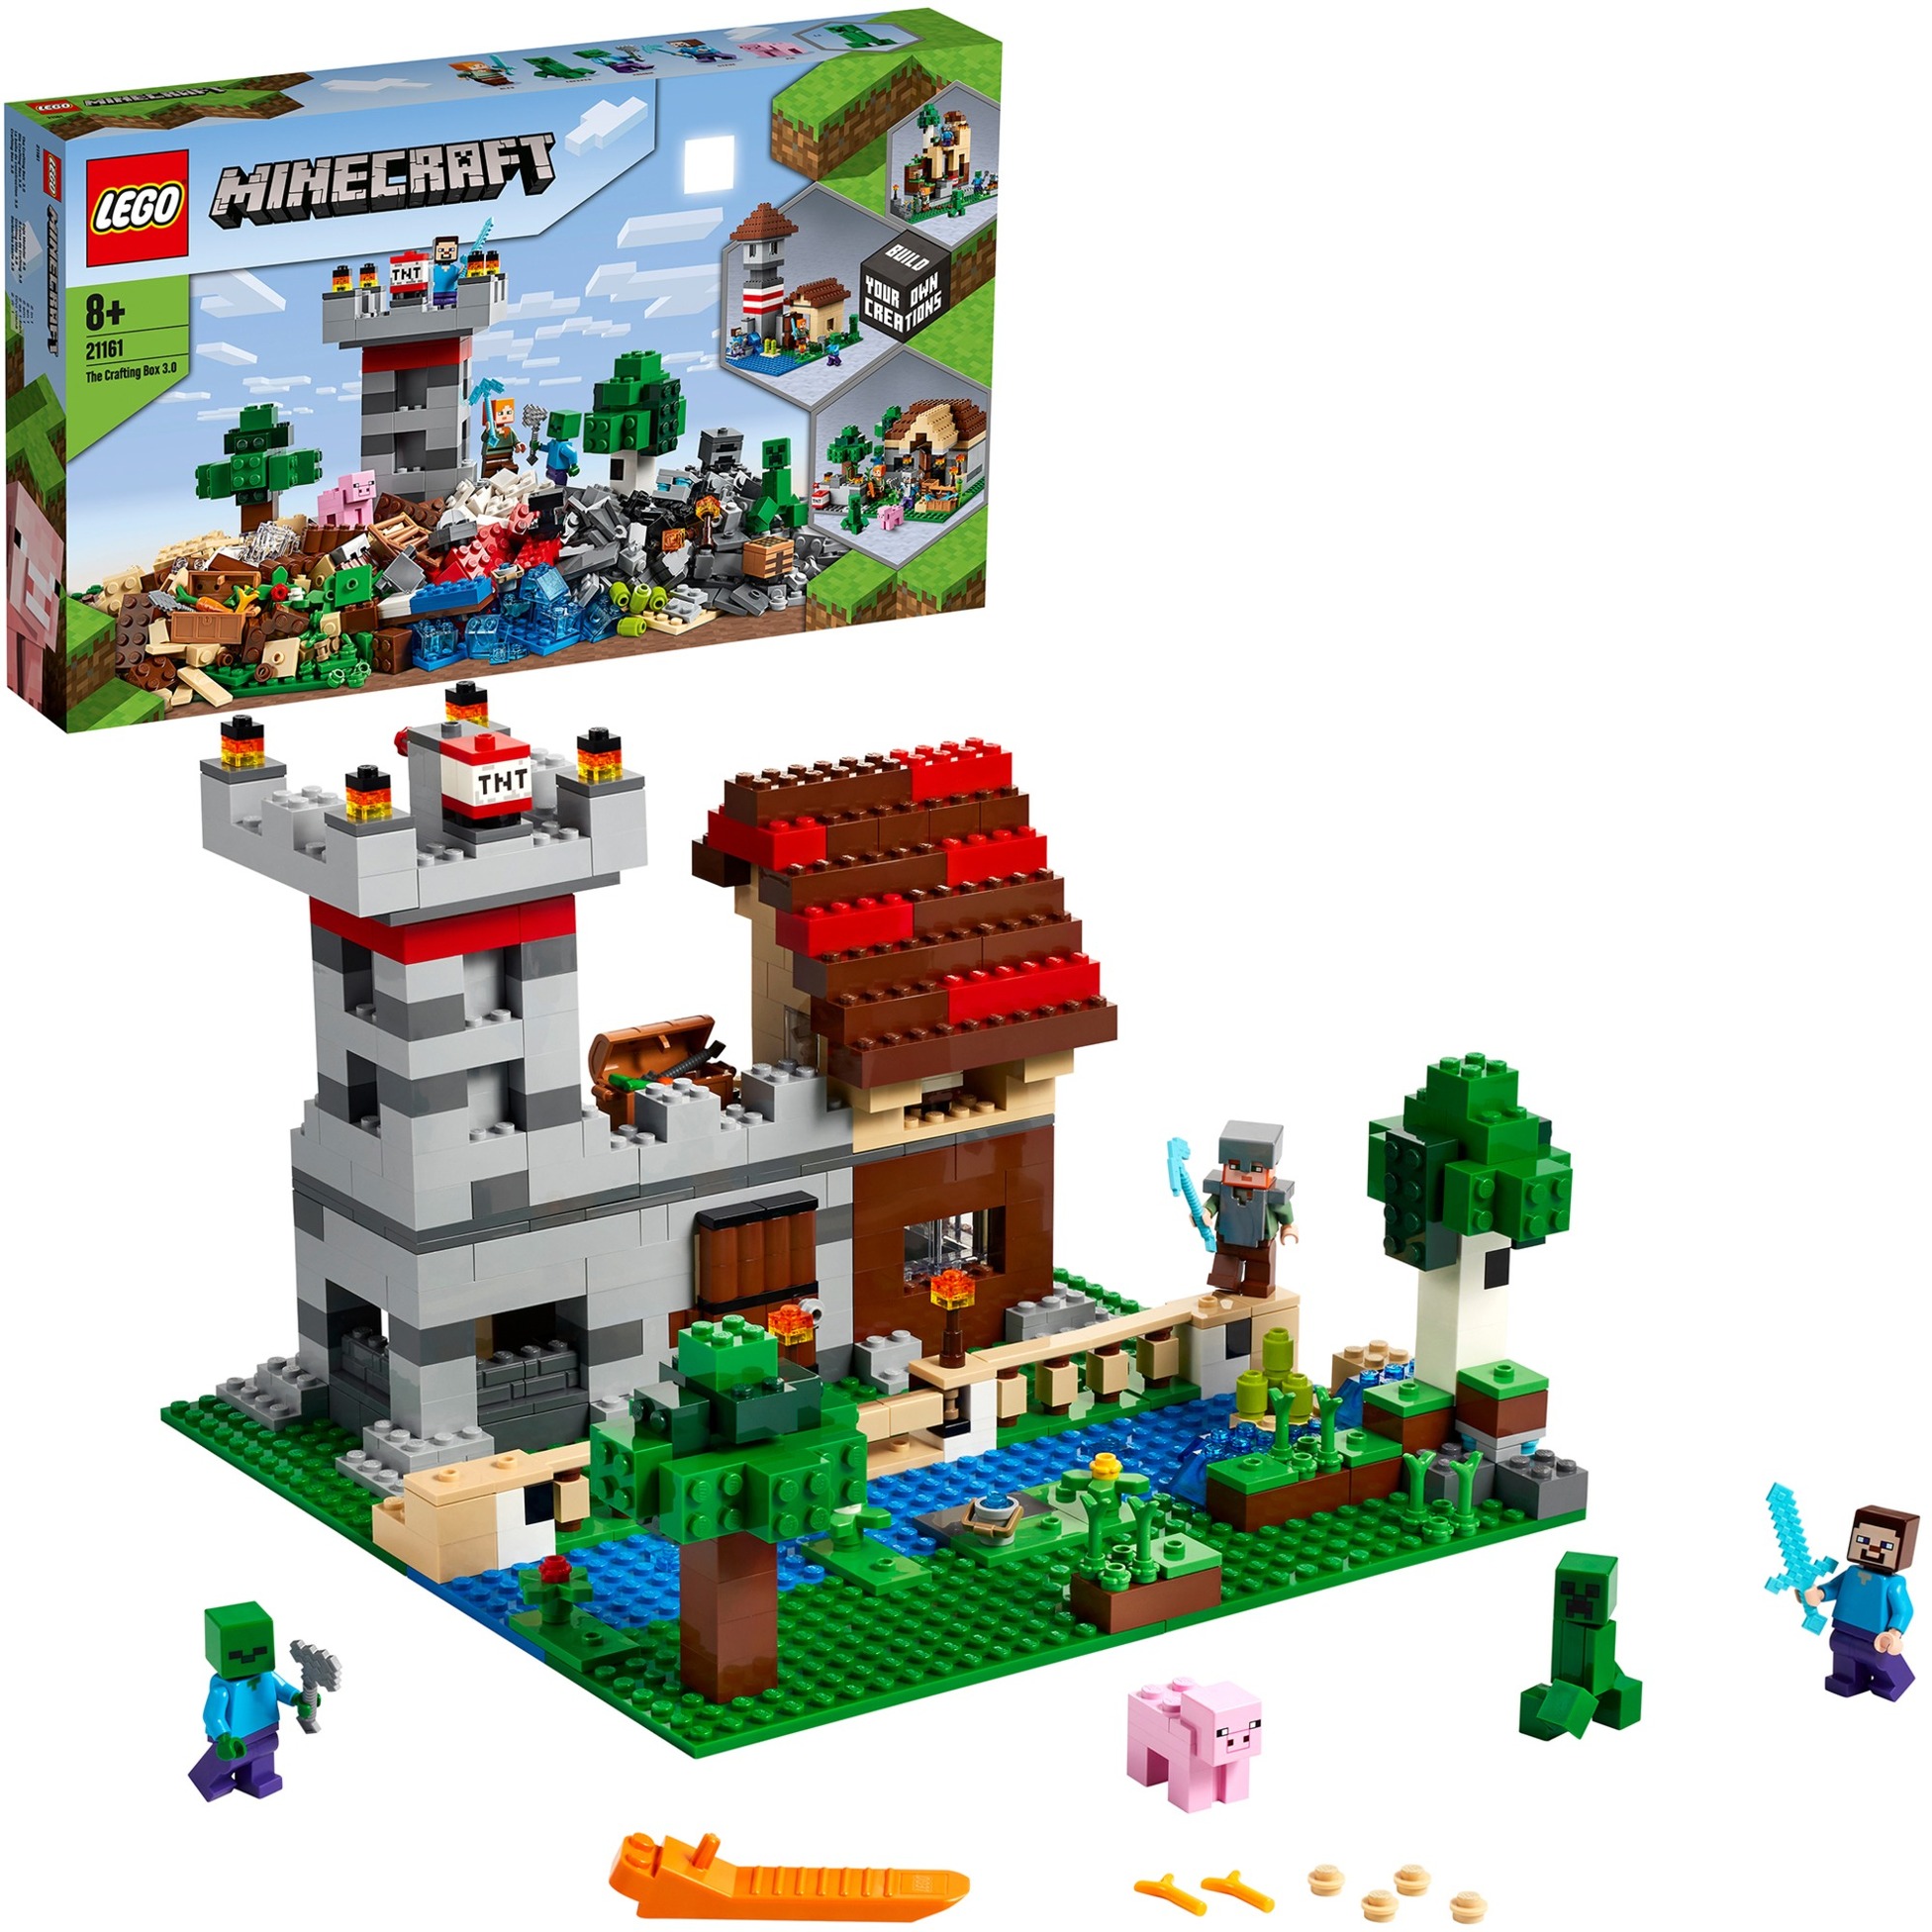 Spielzeug: Lego 21161 Minecraft Die Crafting-Box 3.0